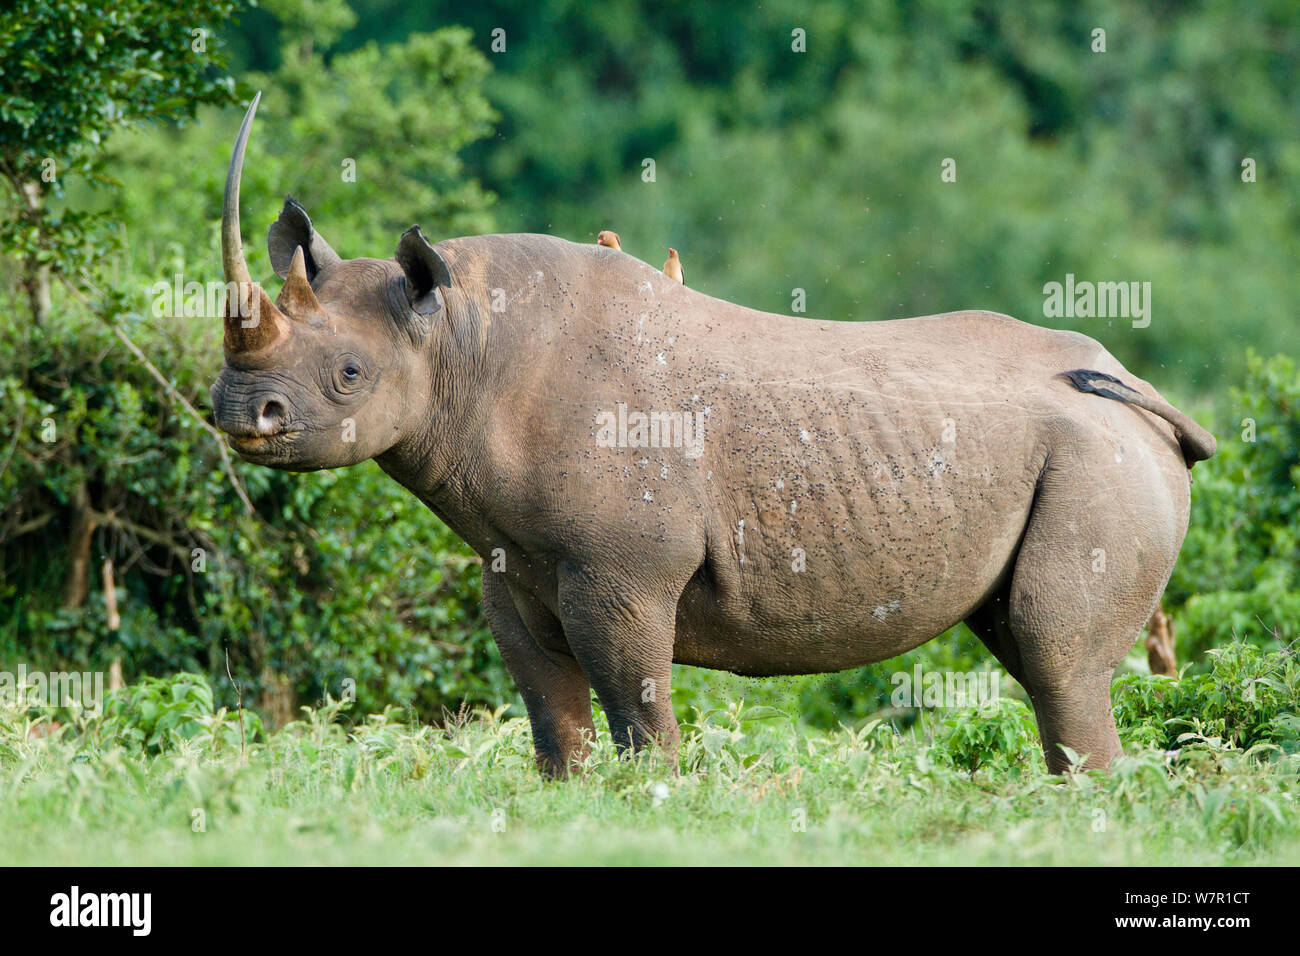 Le rhinocéros noir (Diceros bicornis) mâle avec oxpeckers sur son dos, le Parc National de Nakuru, au Kenya. Espèces en danger critique d'extinction. Banque D'Images